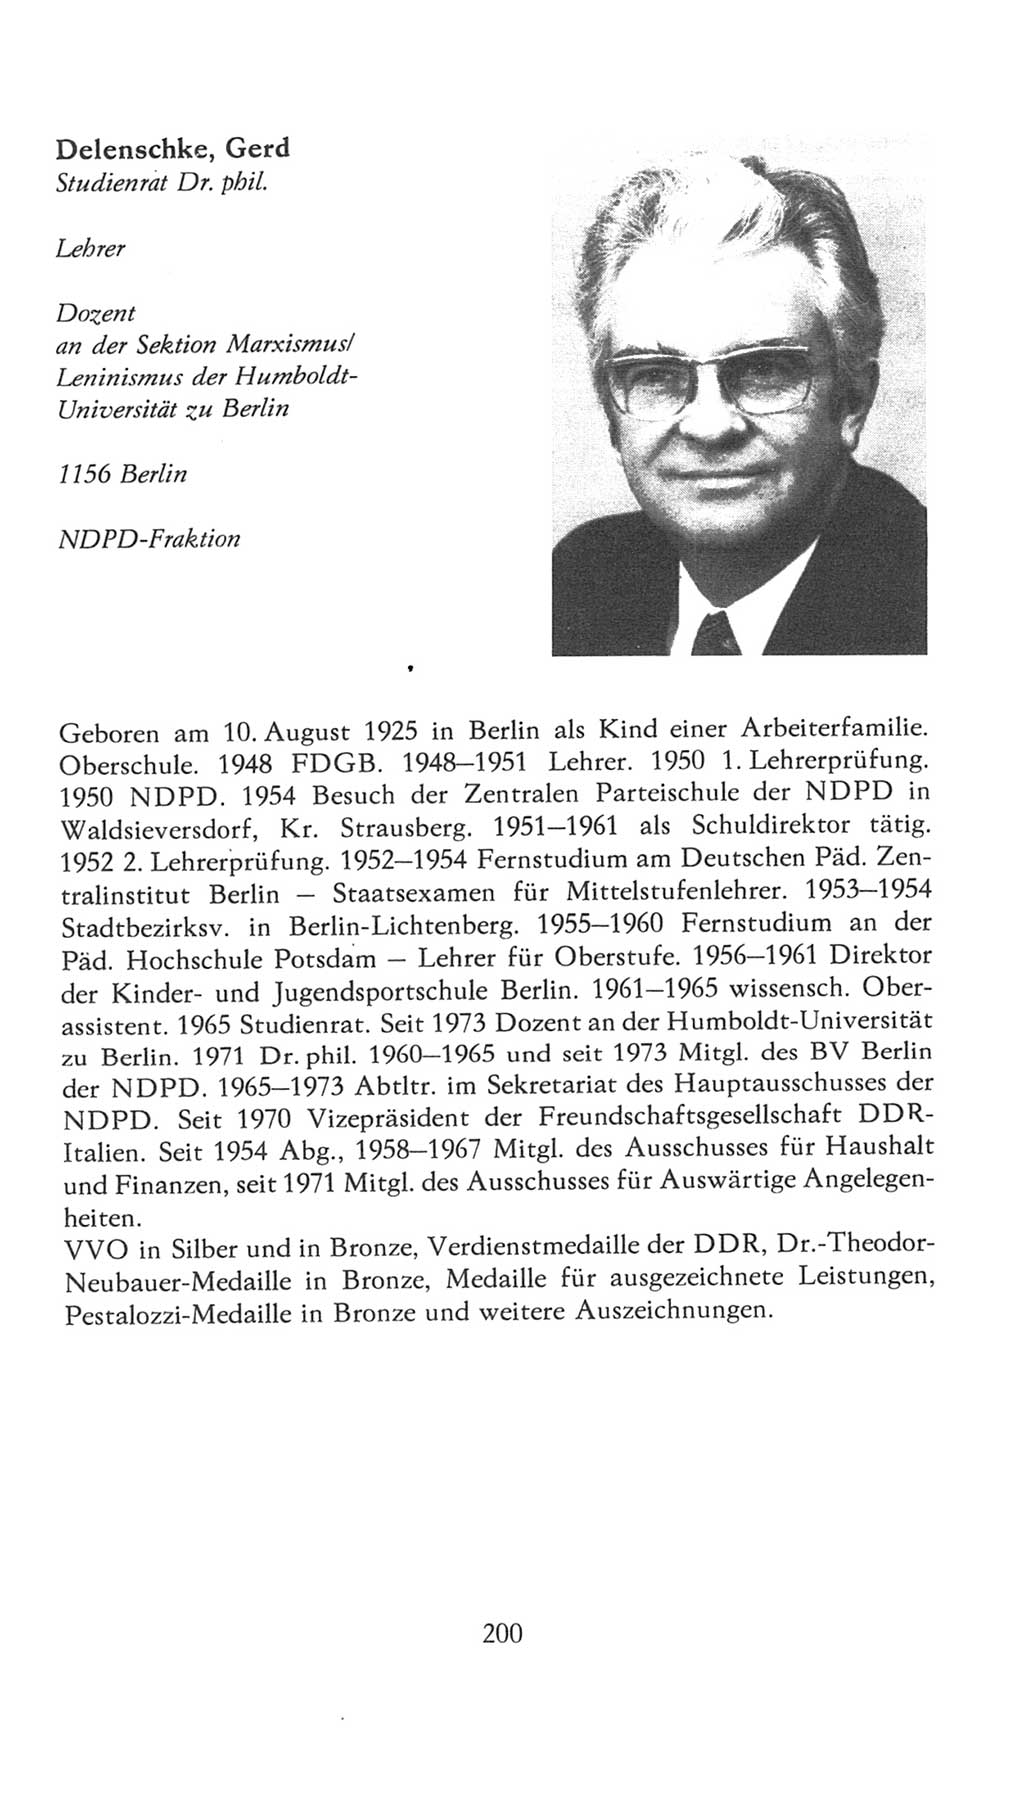 Volkskammer (VK) der Deutschen Demokratischen Republik (DDR), 7. Wahlperiode 1976-1981, Seite 200 (VK. DDR 7. WP. 1976-1981, S. 200)